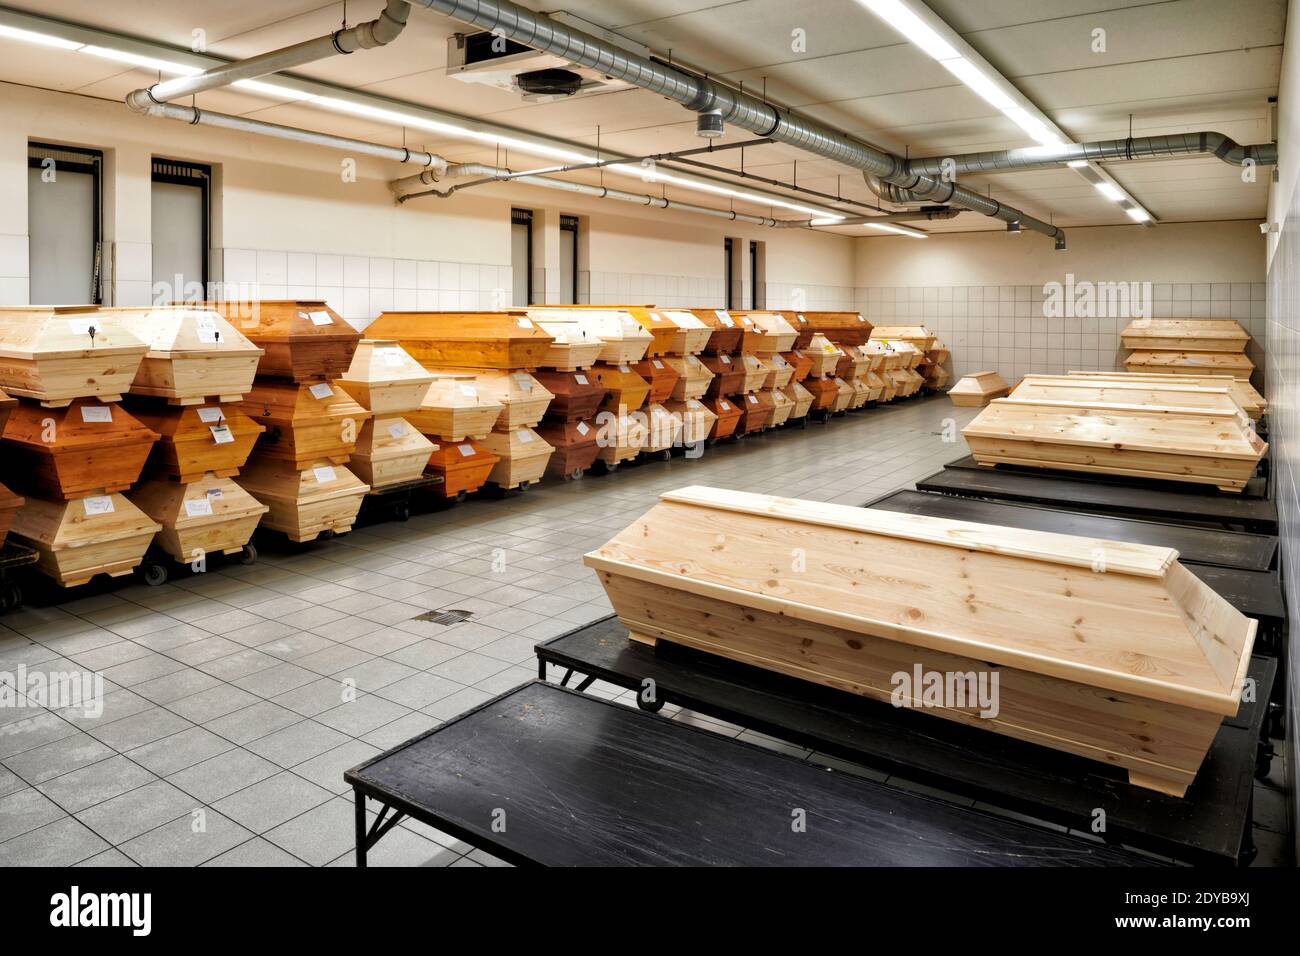 In einem kuehlen Raum eines Krematoriums stapeln sich Saerge mit Toten die noch eingeaeschert werden sollen. Die Sargreihen verlaufen an den Waenden e Foto Stock